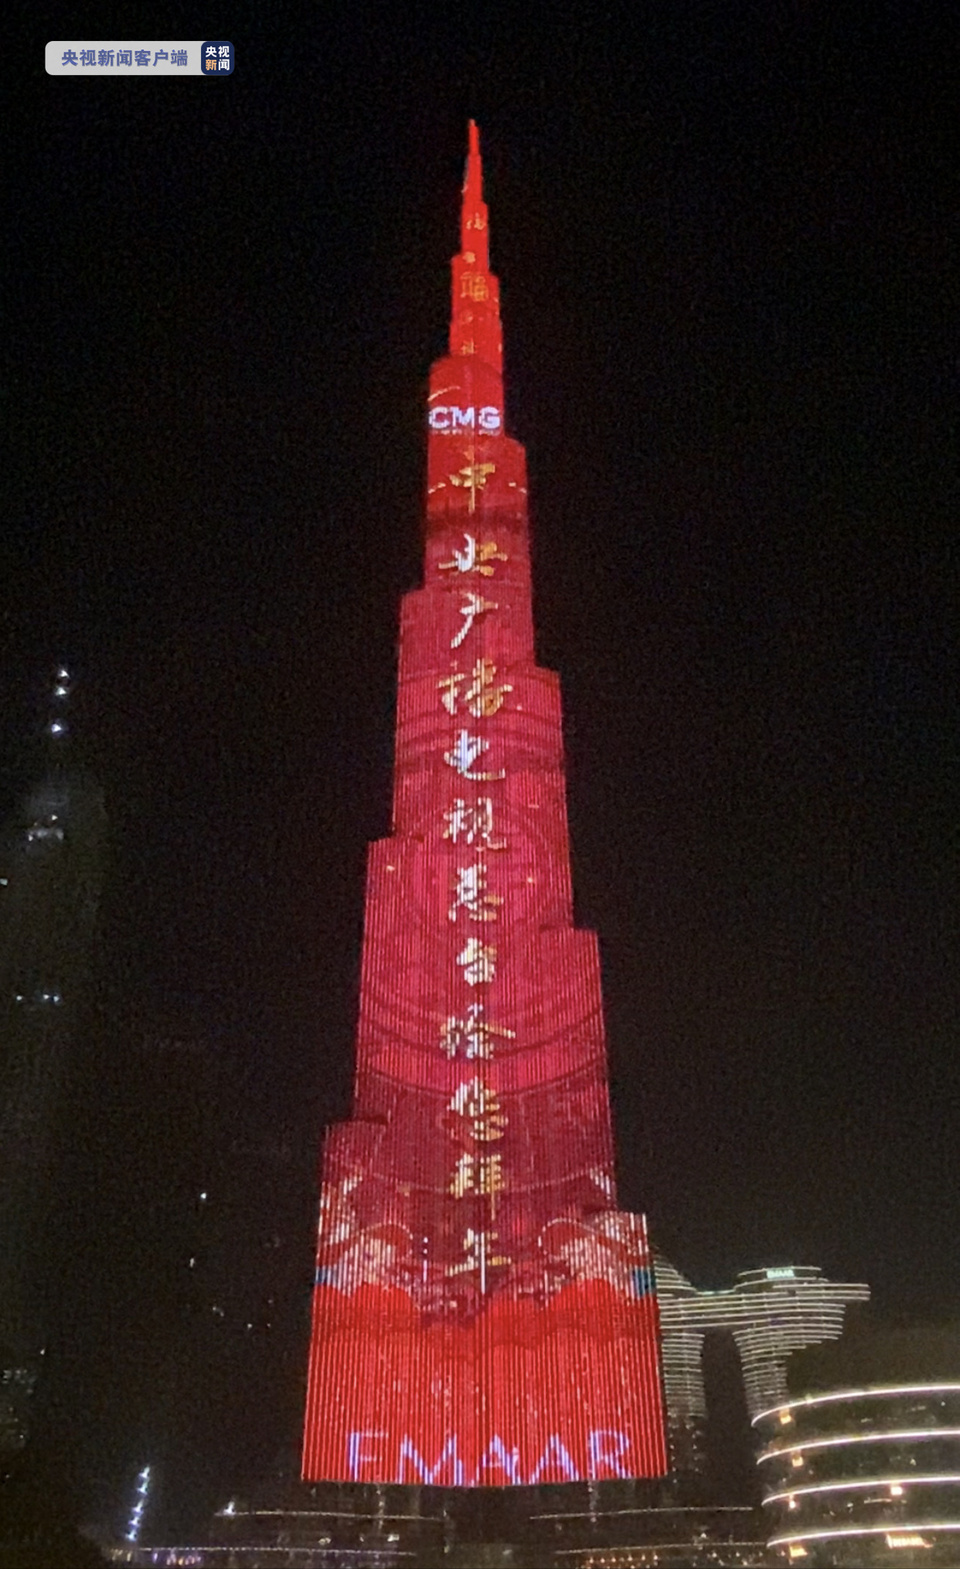 迎冬奥庆新春 总台“一起向未来”主题灯光秀惊艳亮相世界最高塔